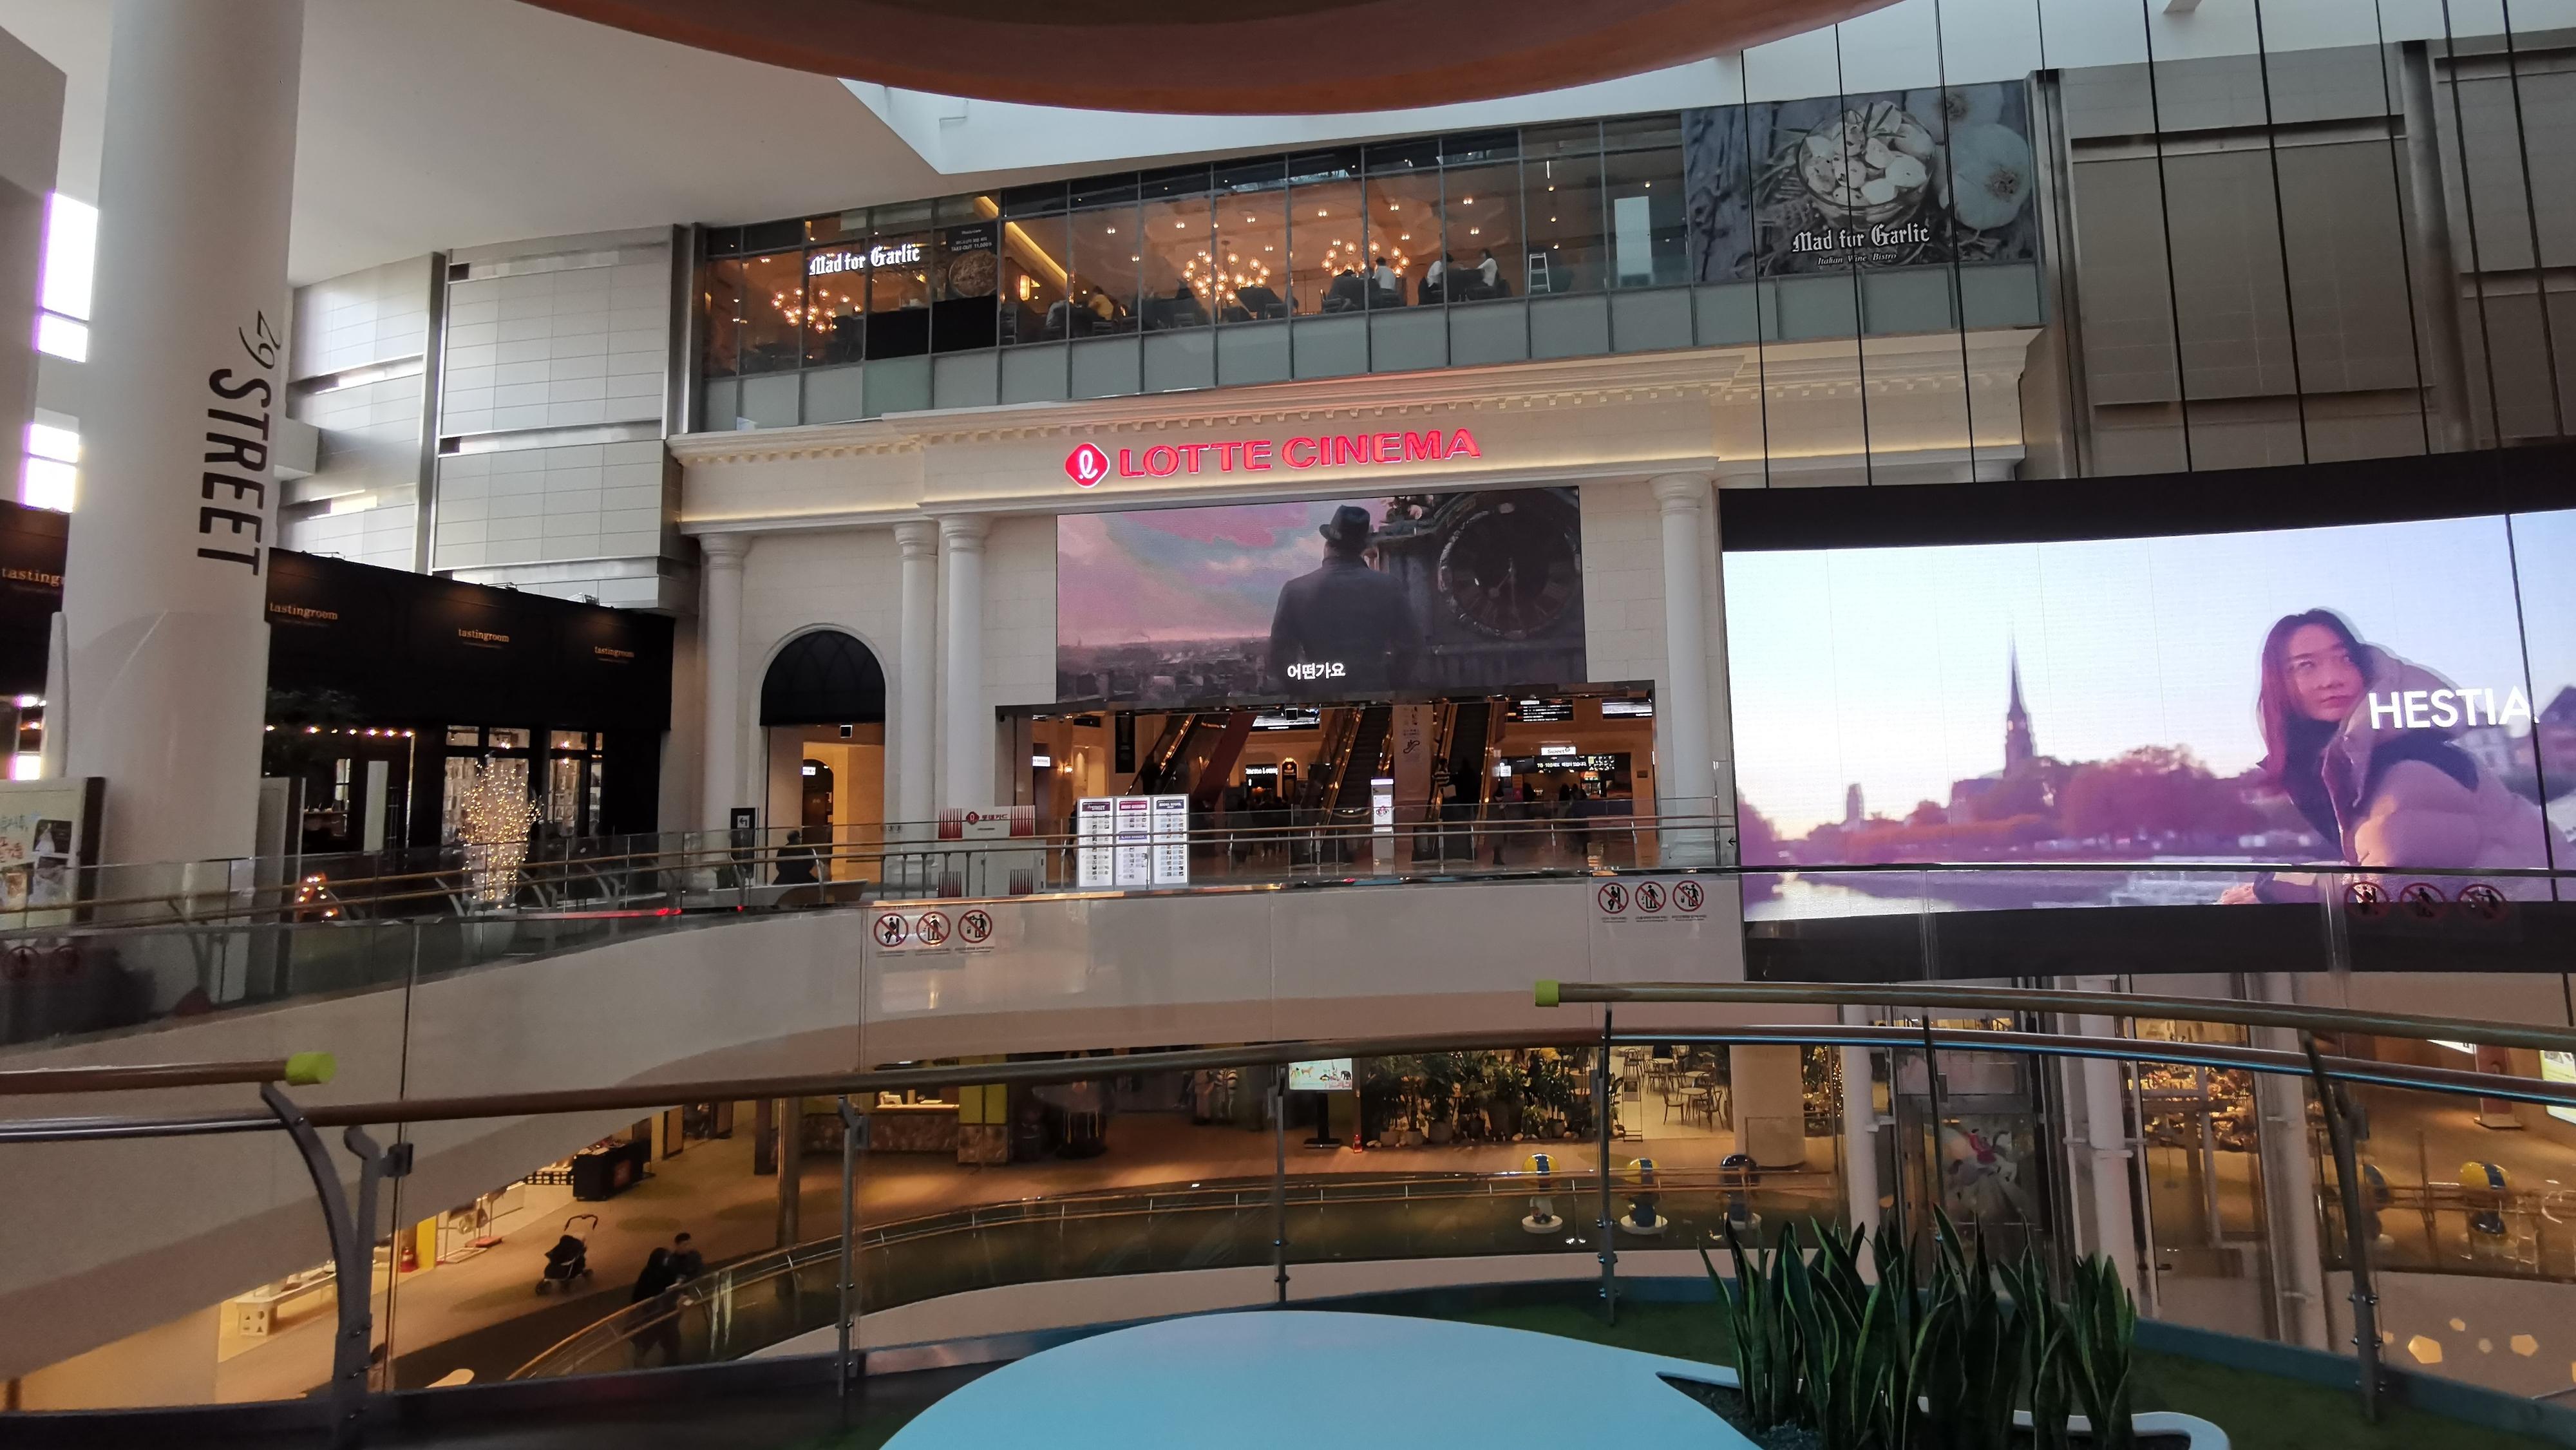 Lotte-kinoen ligger i enden av kjøpesenteret med samme navn.